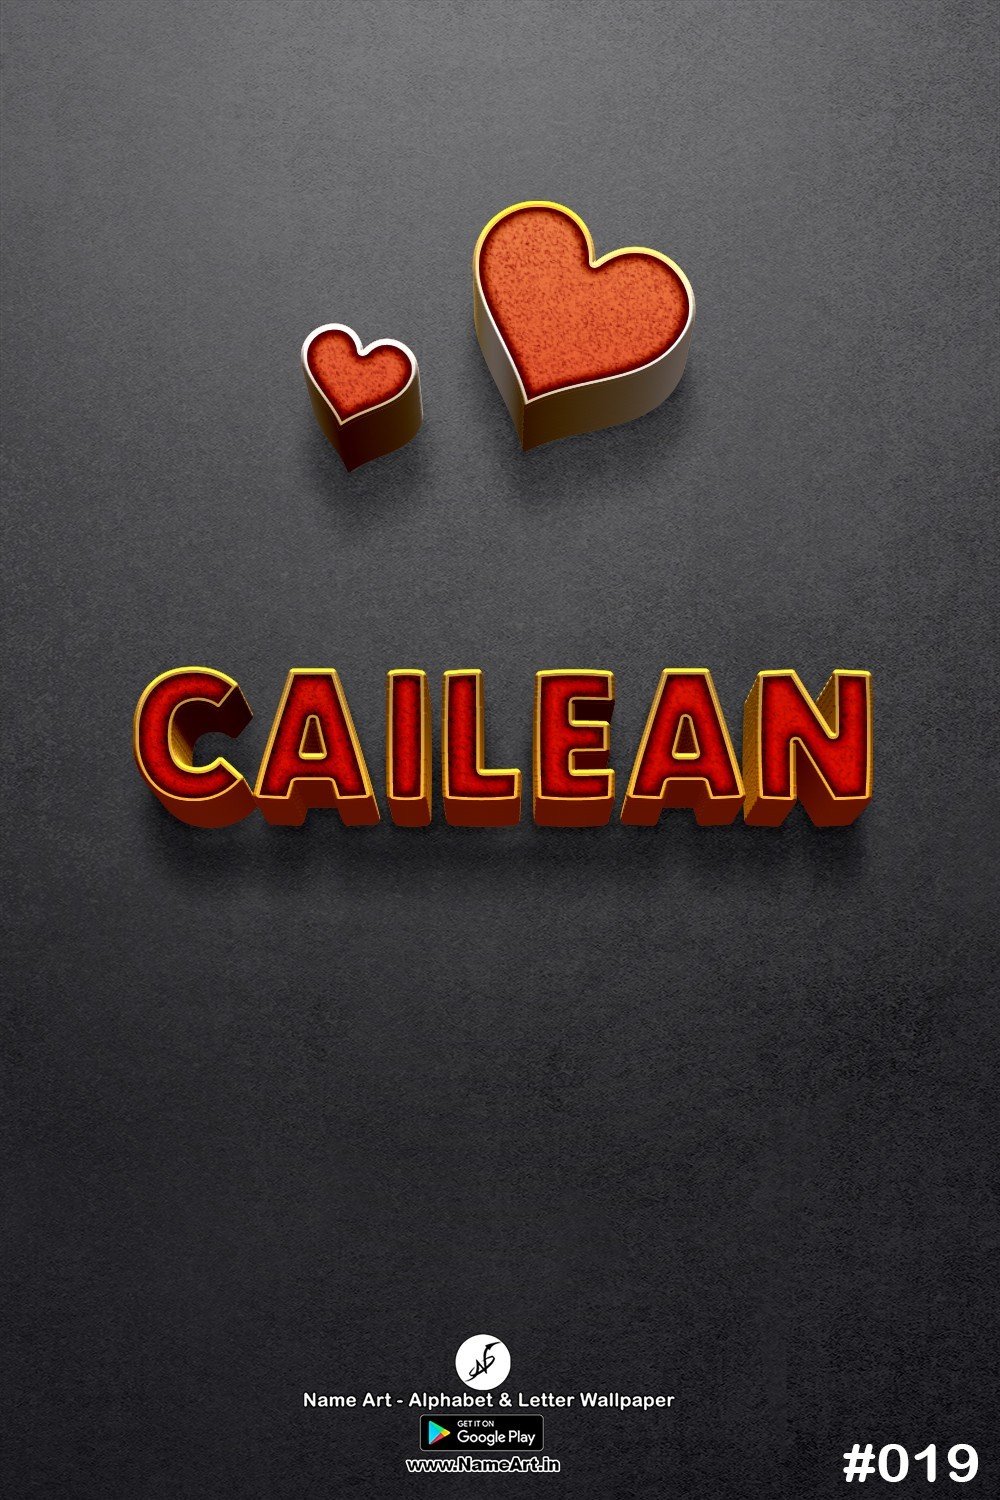 Cailean | Whatsapp Status Cailean | Happy Birthday Cailean !! | New Whatsapp Status Cailean Images |